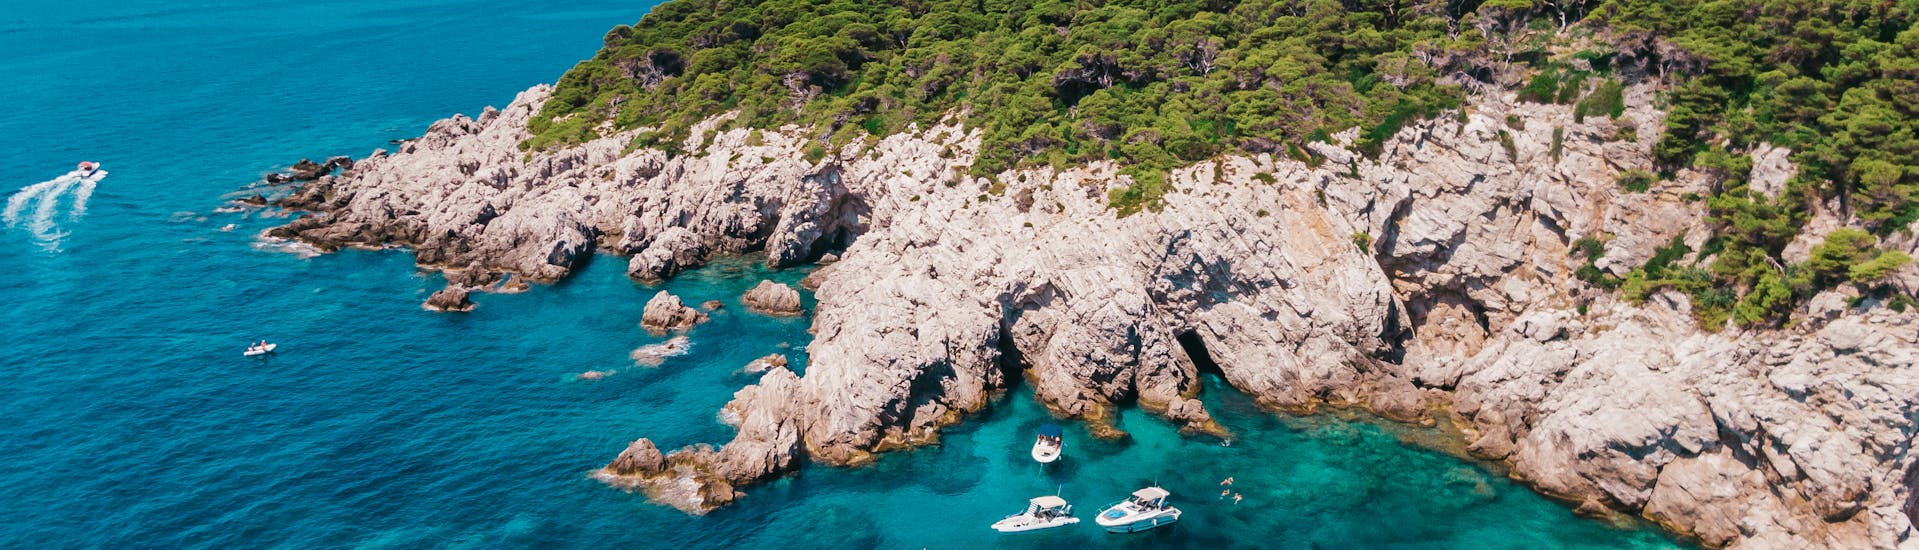 Paseo en barco privado de Dubrovnik a Islas Elaphiti con baño en el mar & avistamiento de fauna.